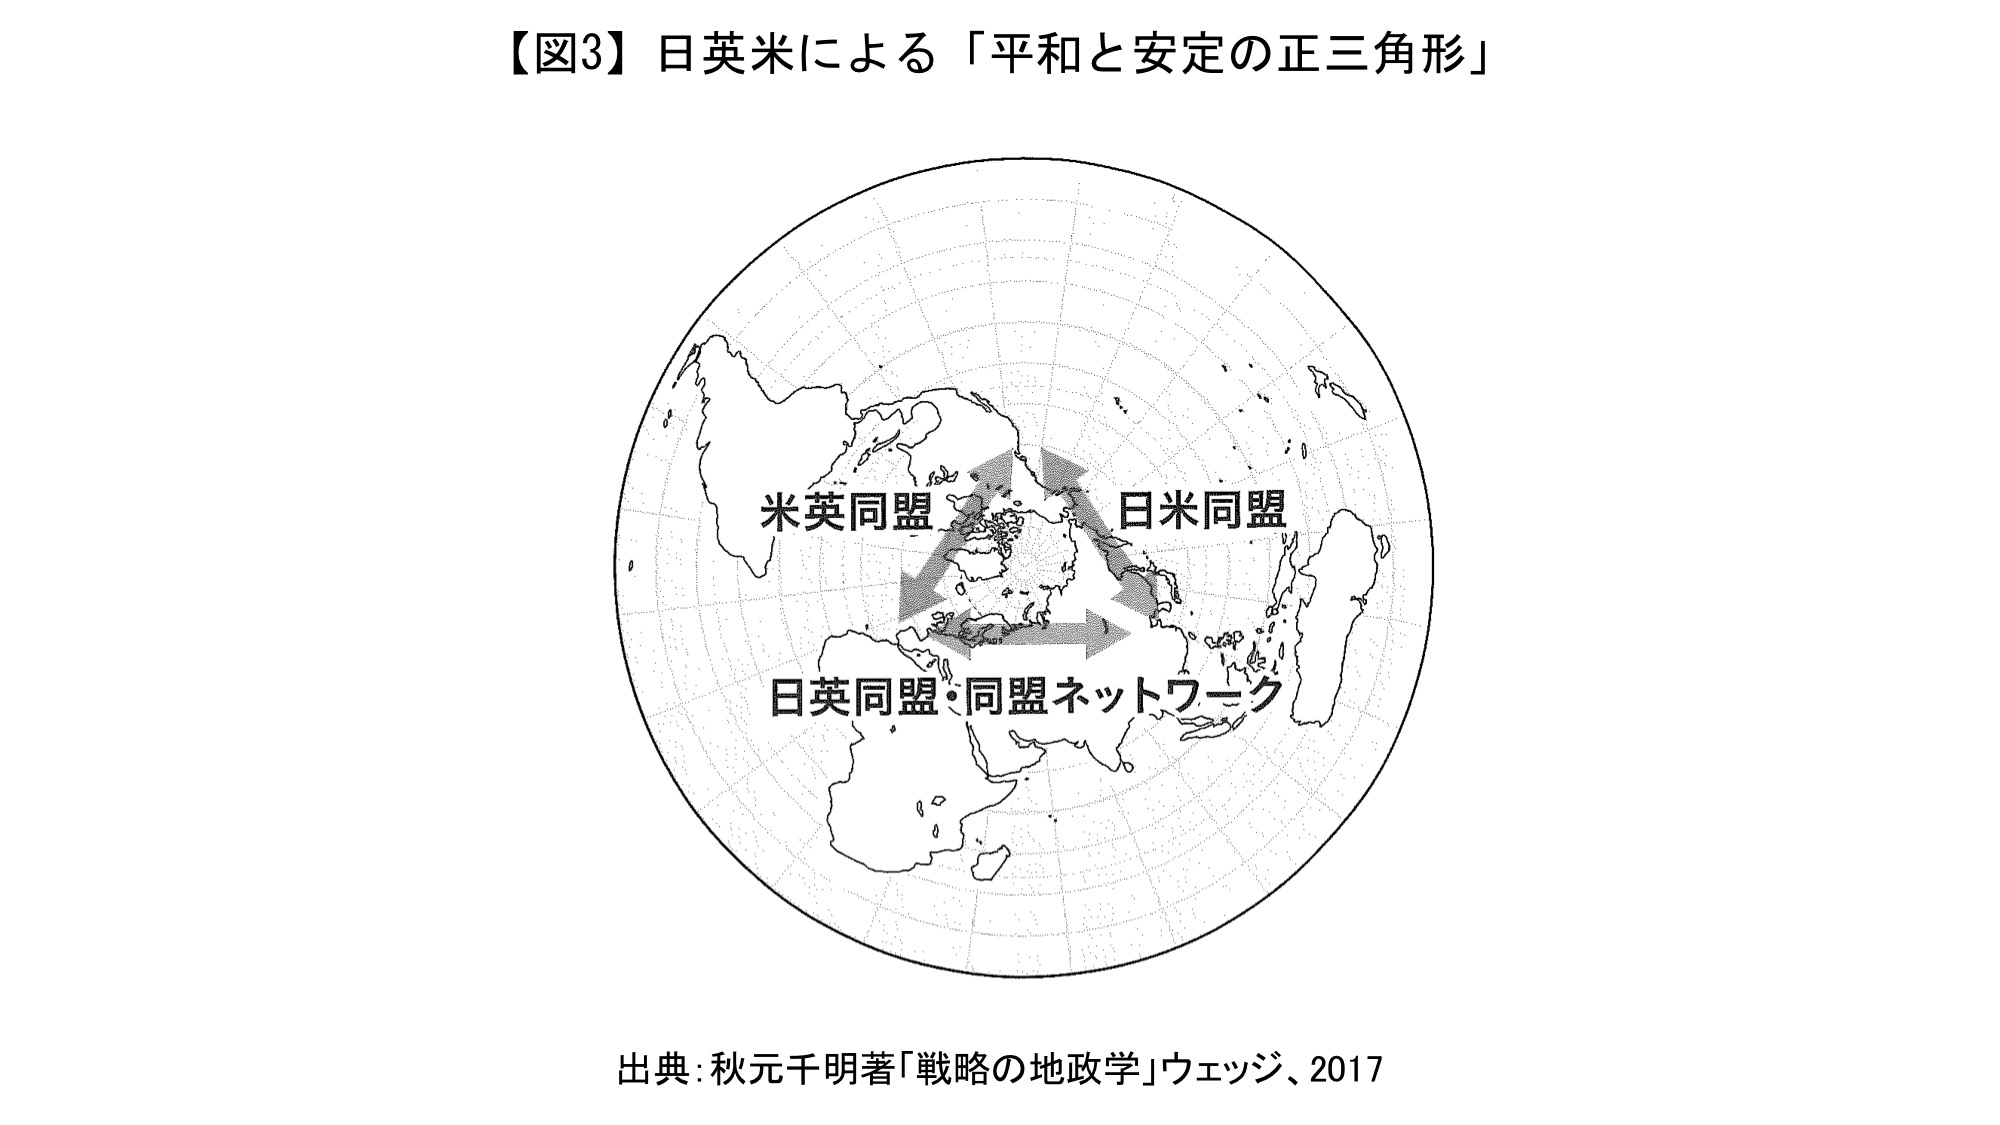 多層な安全保障協力の構築と「新日英同盟」 ―今後の日本の外交安全保障戦略― | 一般社団法人平和政策研究所